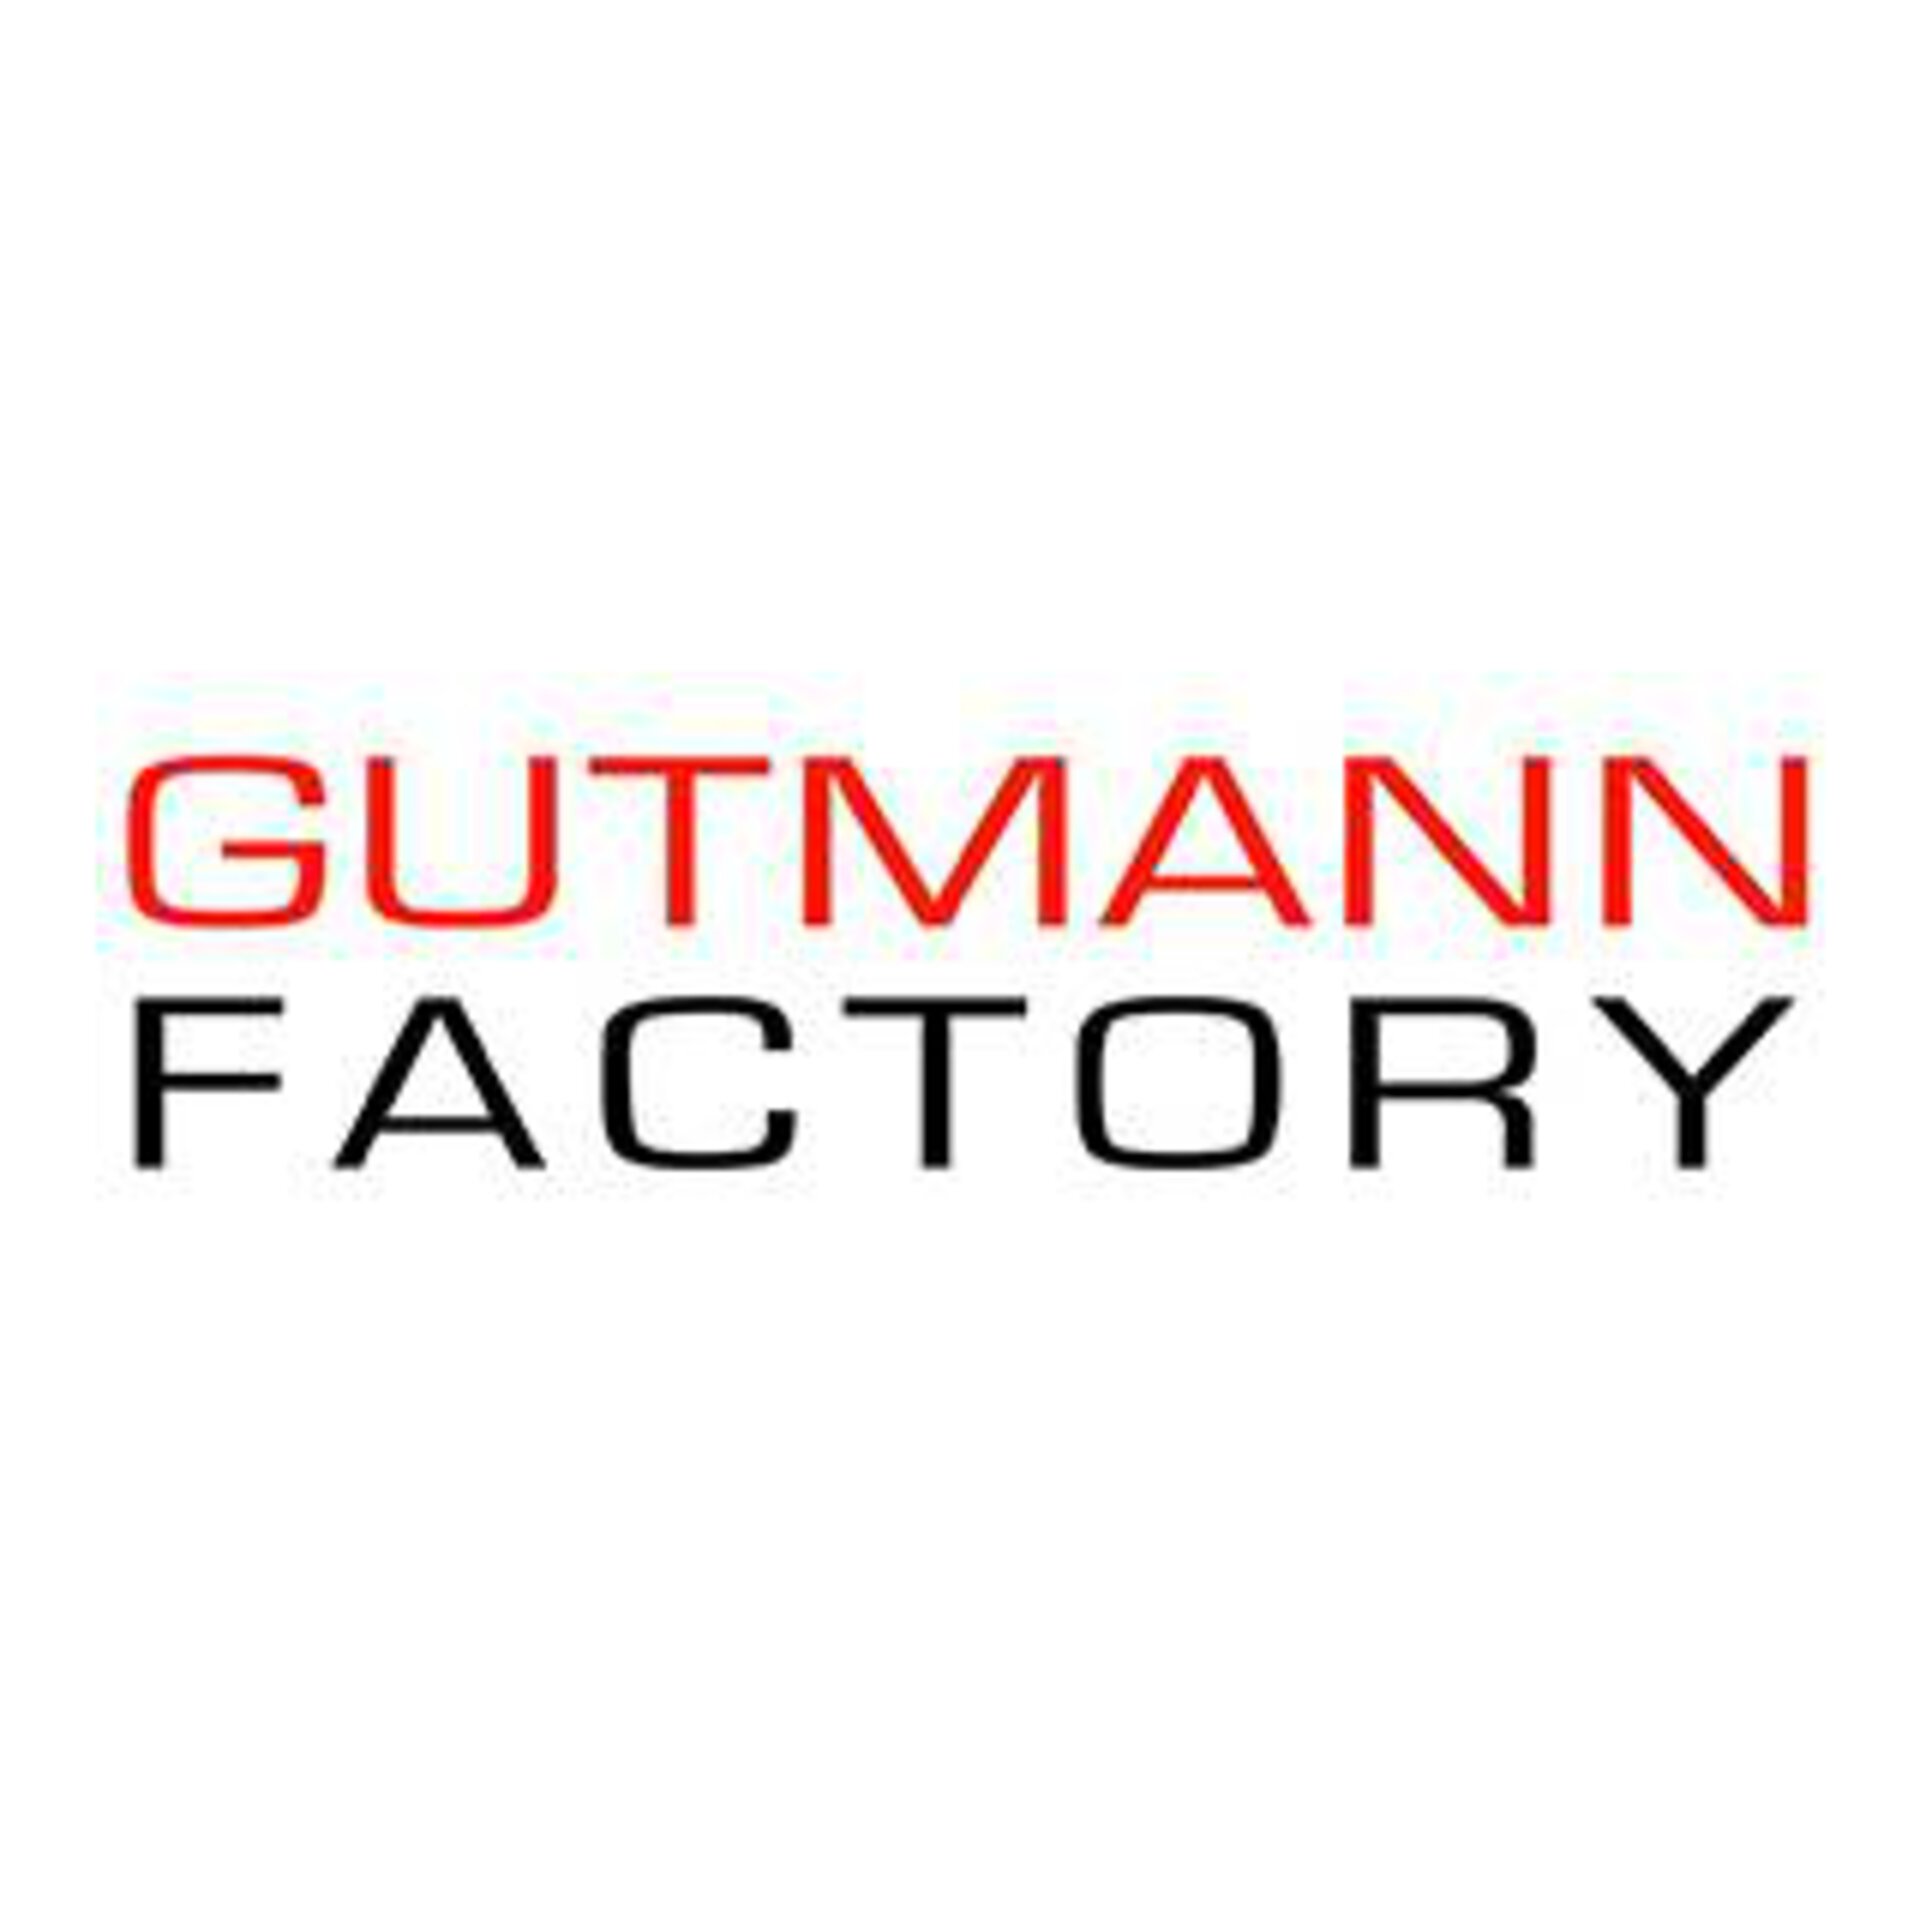 Gutmann Factory